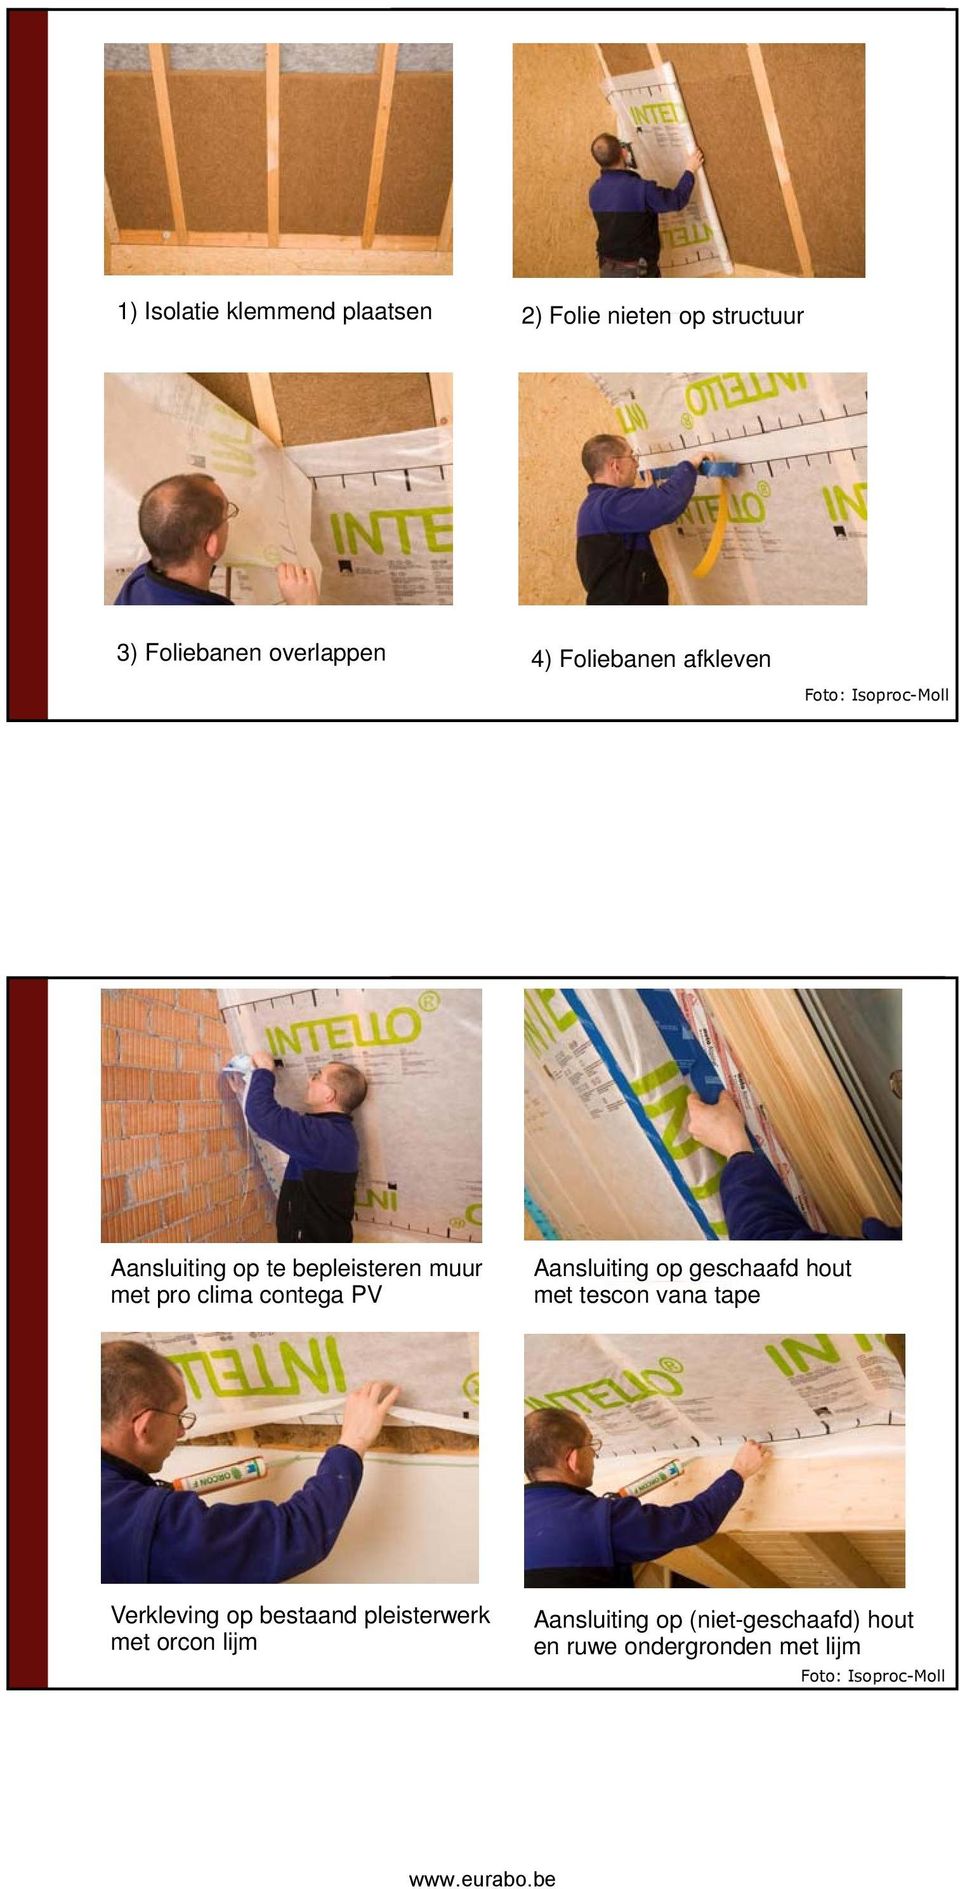 bepleisteren muur met pro clima contega PV Aansluiting op geschaafd hout met tescon vana tape Verkleving op bestaand pleisterwerk met orcon lijm